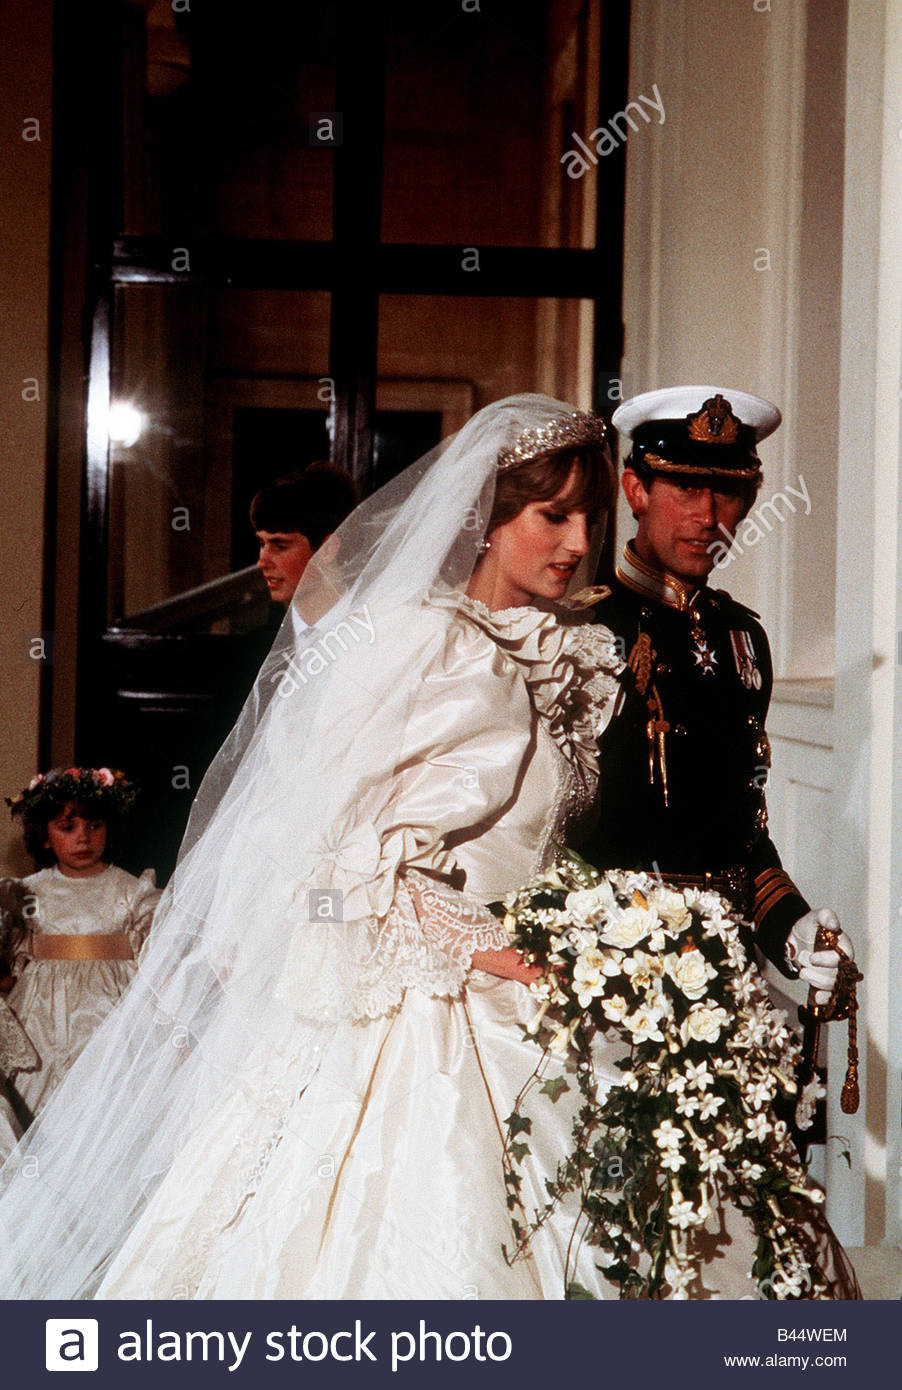 Hochzeit Prinz Charles
 Königliche Hochzeit Prinz Charles und Prinzessin Diana